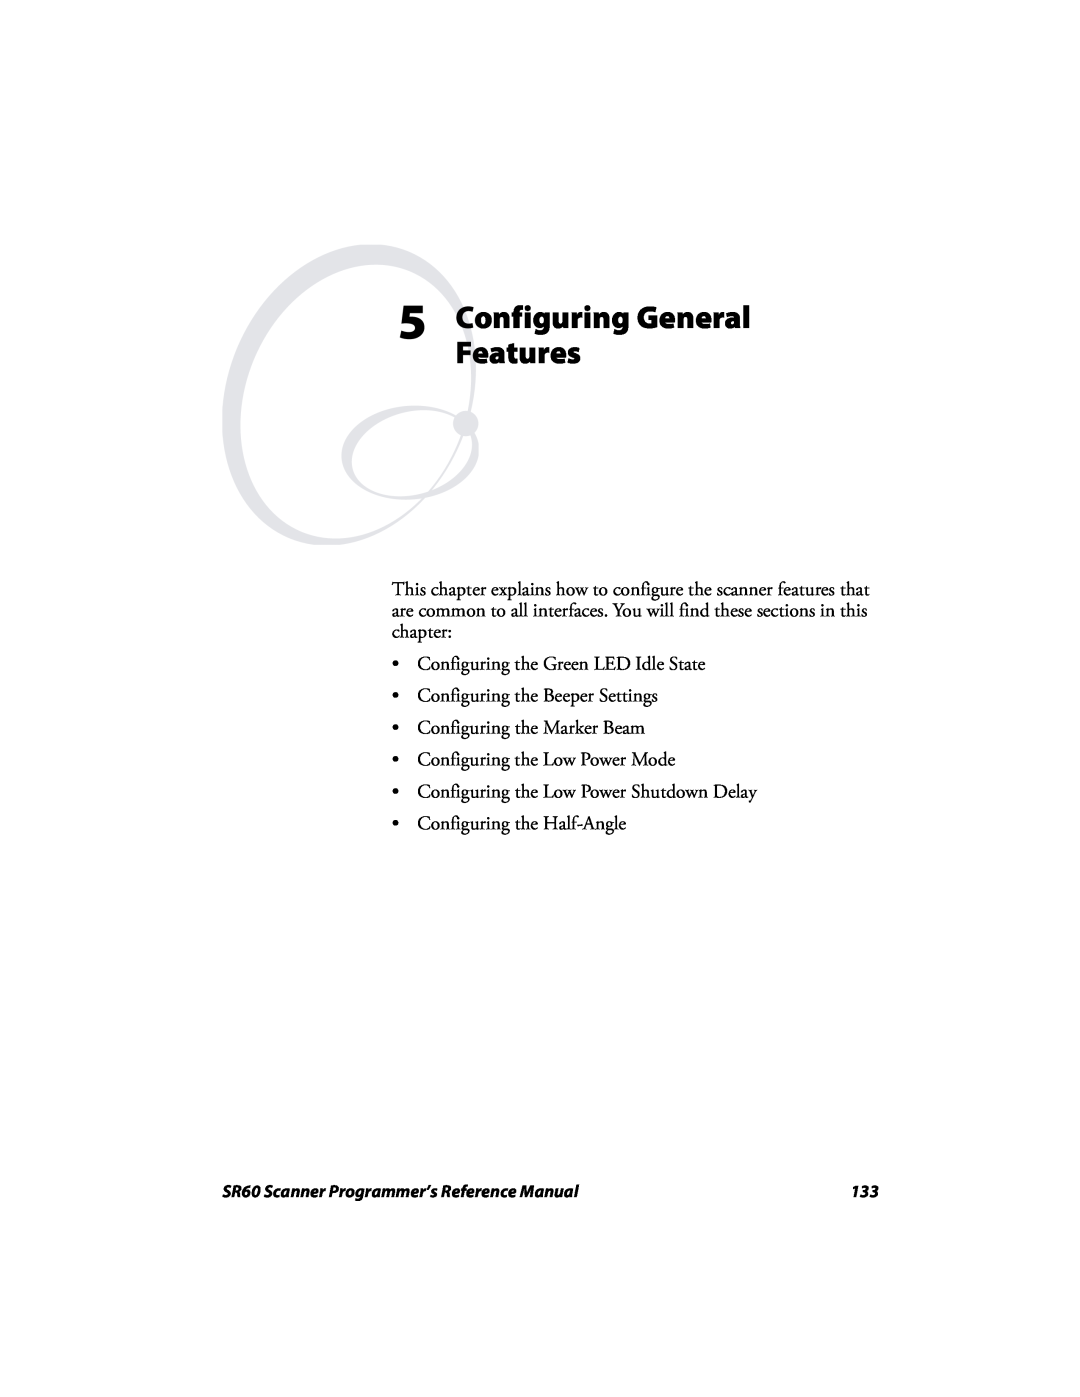 Intermec SR60 manual Configuring General Features 